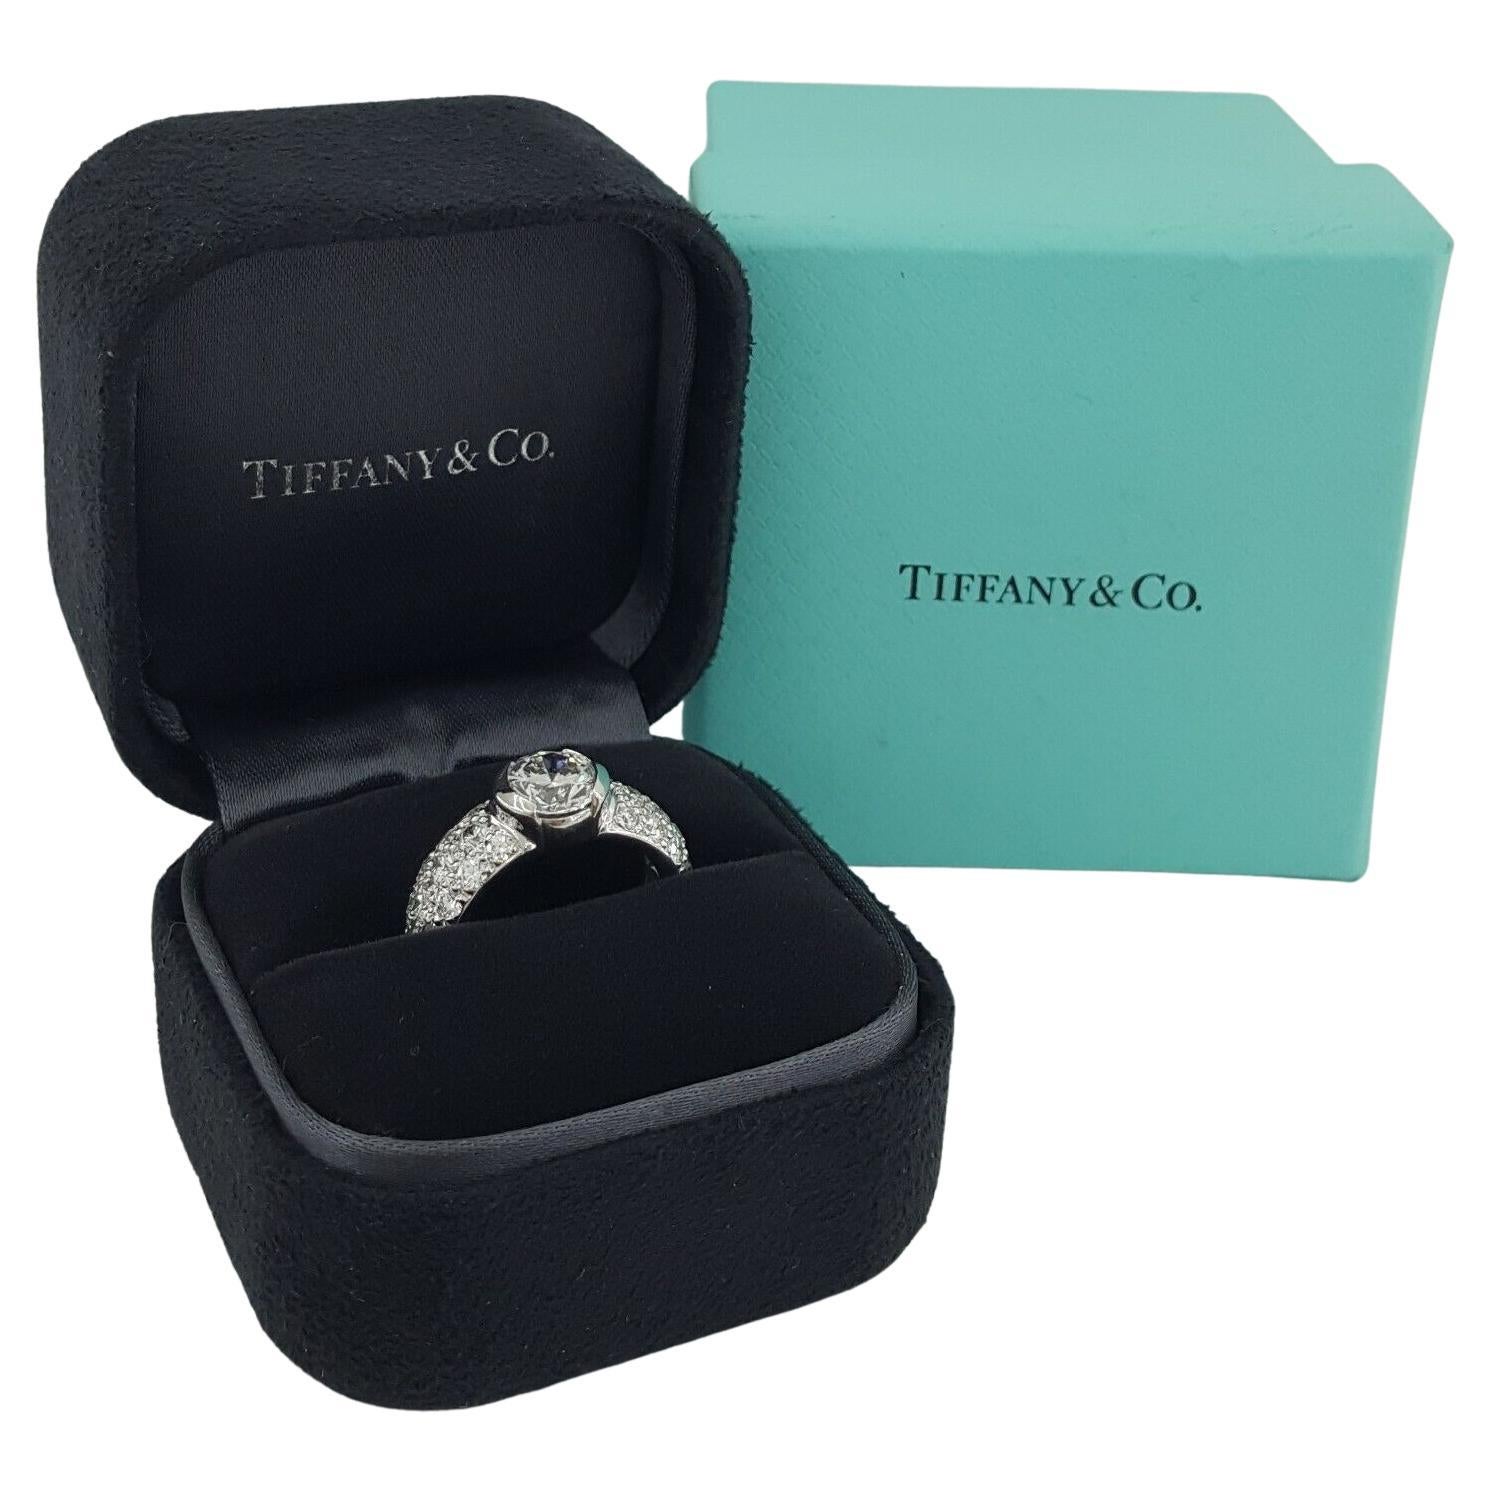  Tiffany & Co. Bague de fiançailles Etoile 2,59 ct de poids total Platinum Round Brilliant Cut Diamond Pave. 

La bague est livrée avec un écrin de diamants Tiffany & Co.